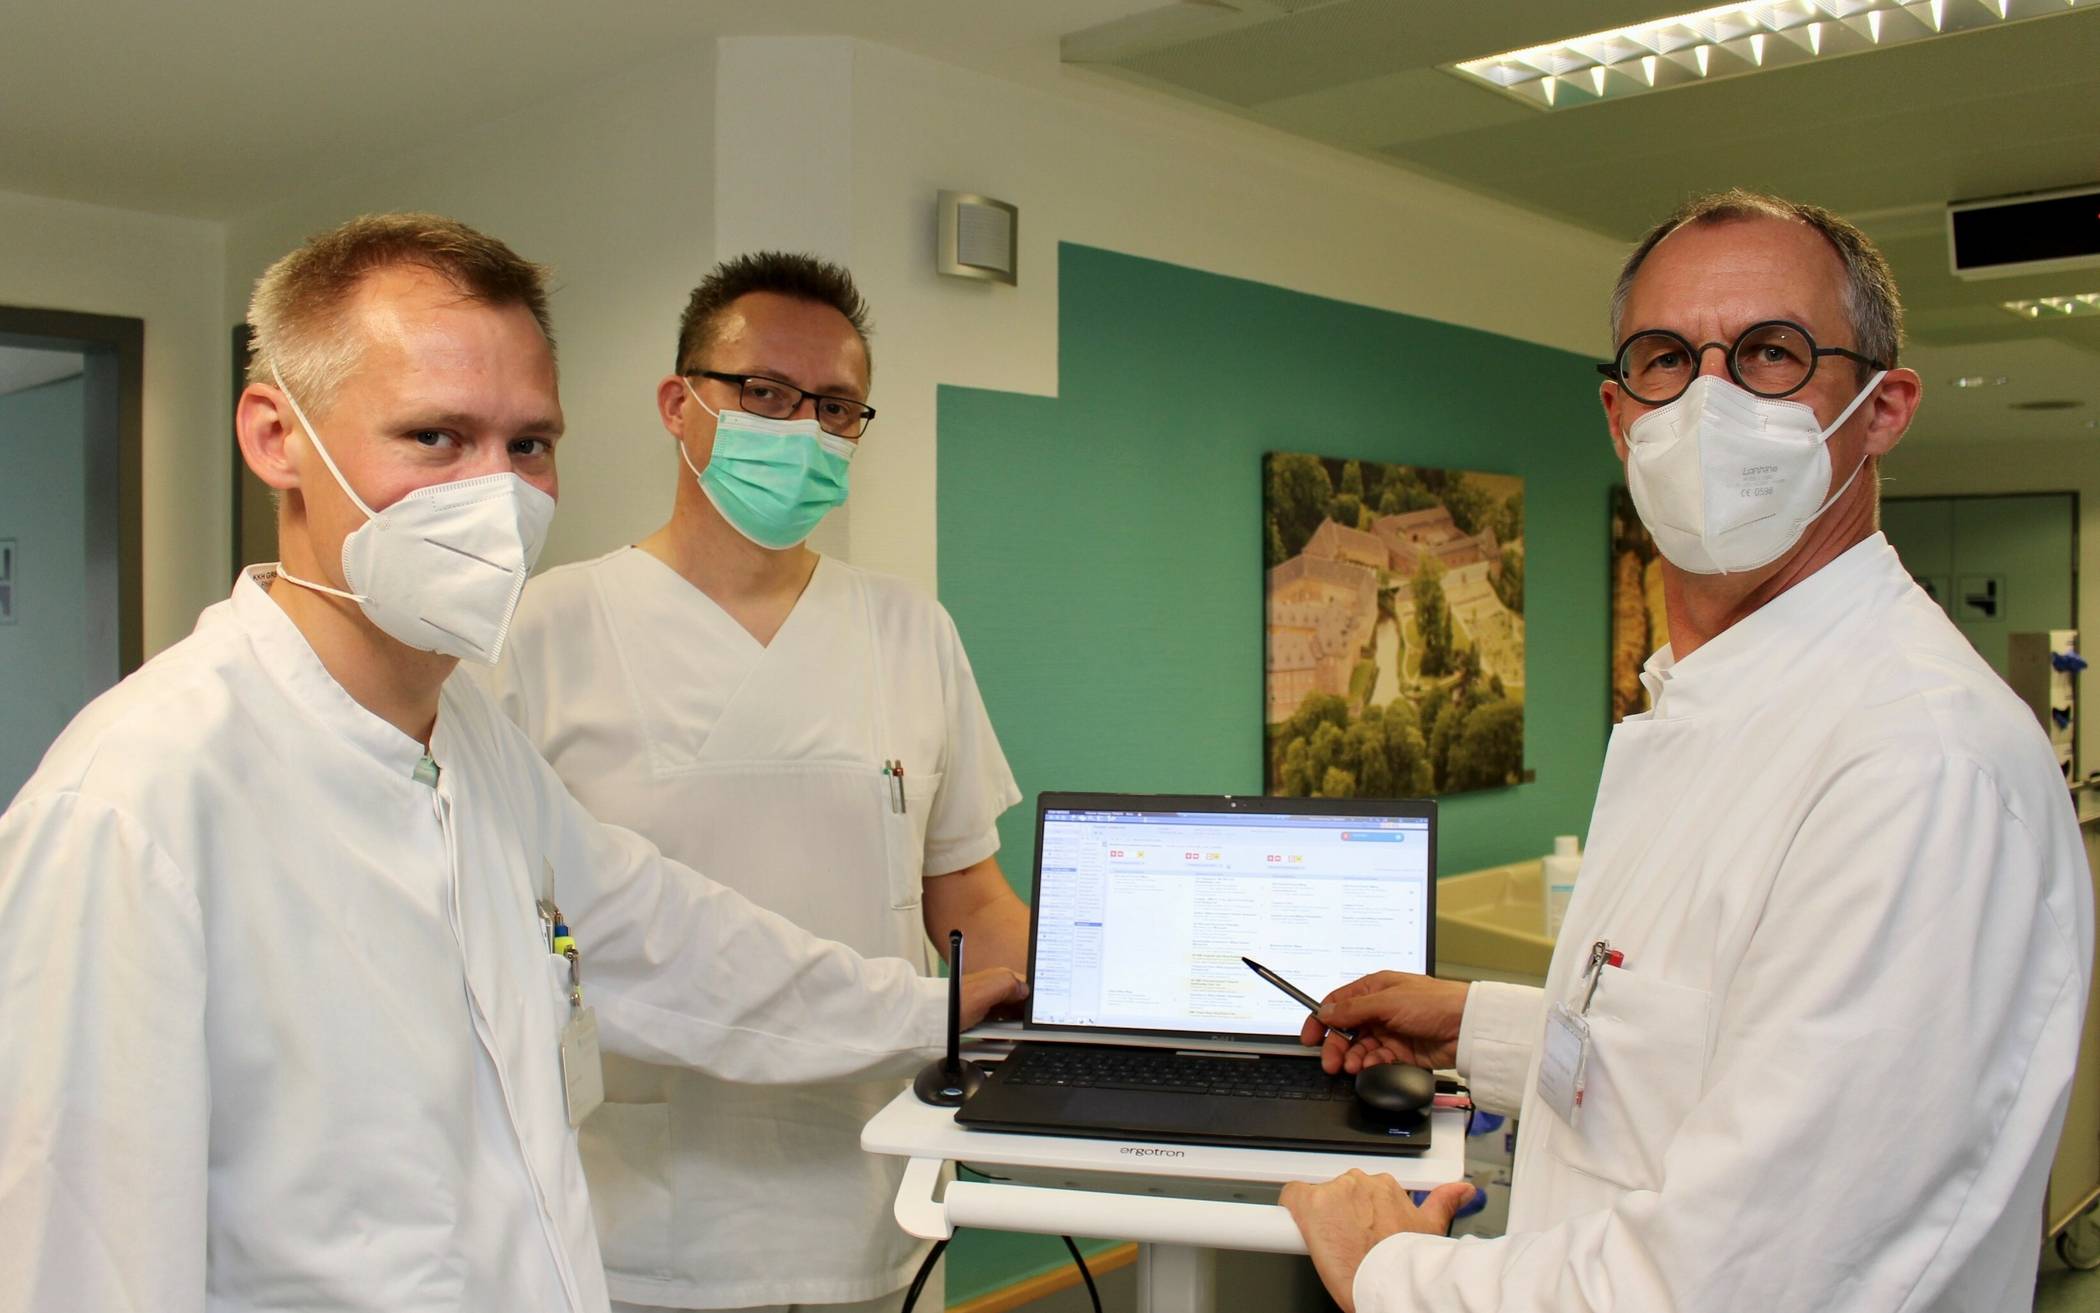 Geriatrie-Chefarzt Dr. Oliver Franz (rechts) gemeinsam mit Oberarzt Philipp Lechner (links) und Stationsleiter Bernd Heinemann (Mitte) bei der Visite auf der Geriatrischen Station – ab sofort mit Laptop anstatt mit Papierakte.  